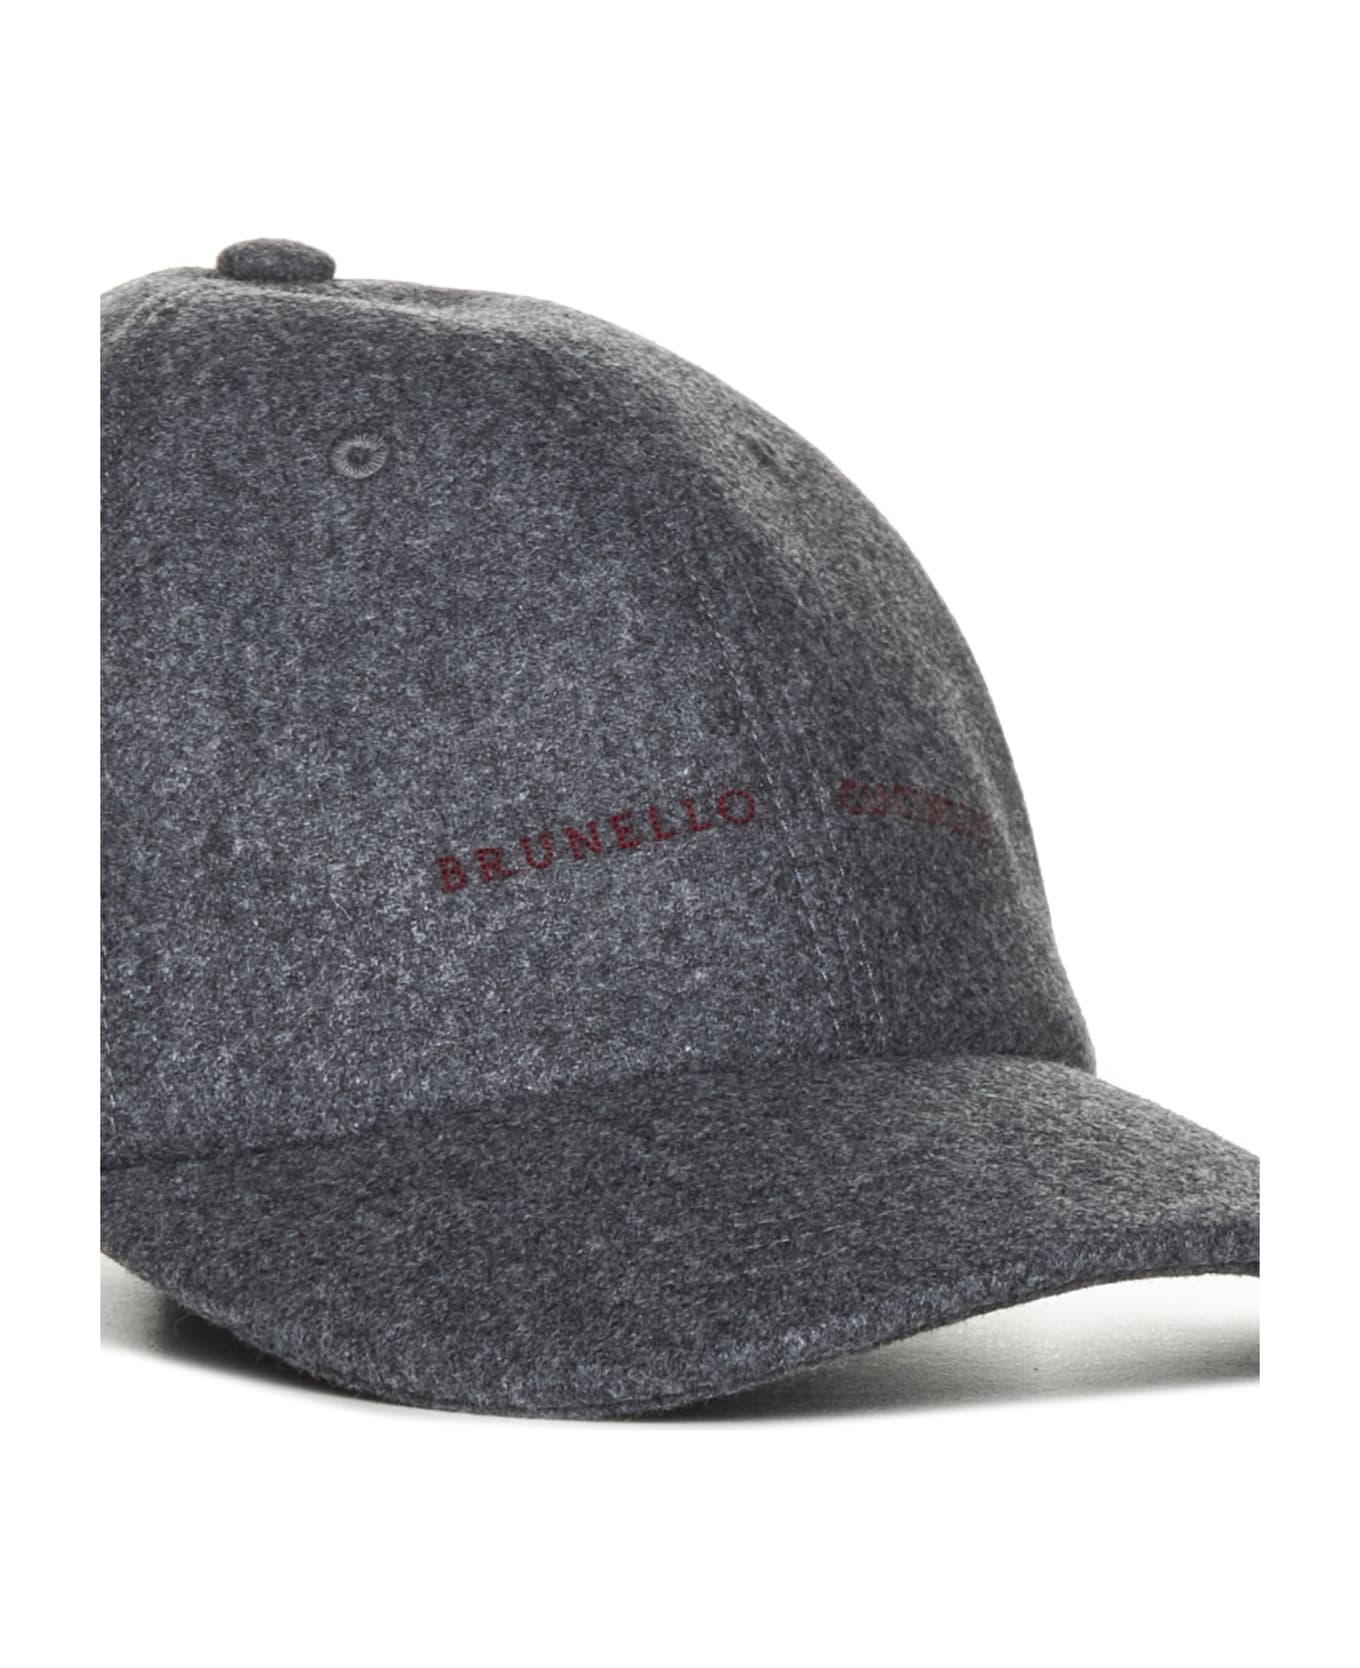 Brunello Cucinelli Logo Embroidered Curved Peak Baseball Cap - Grigio scuro 帽子